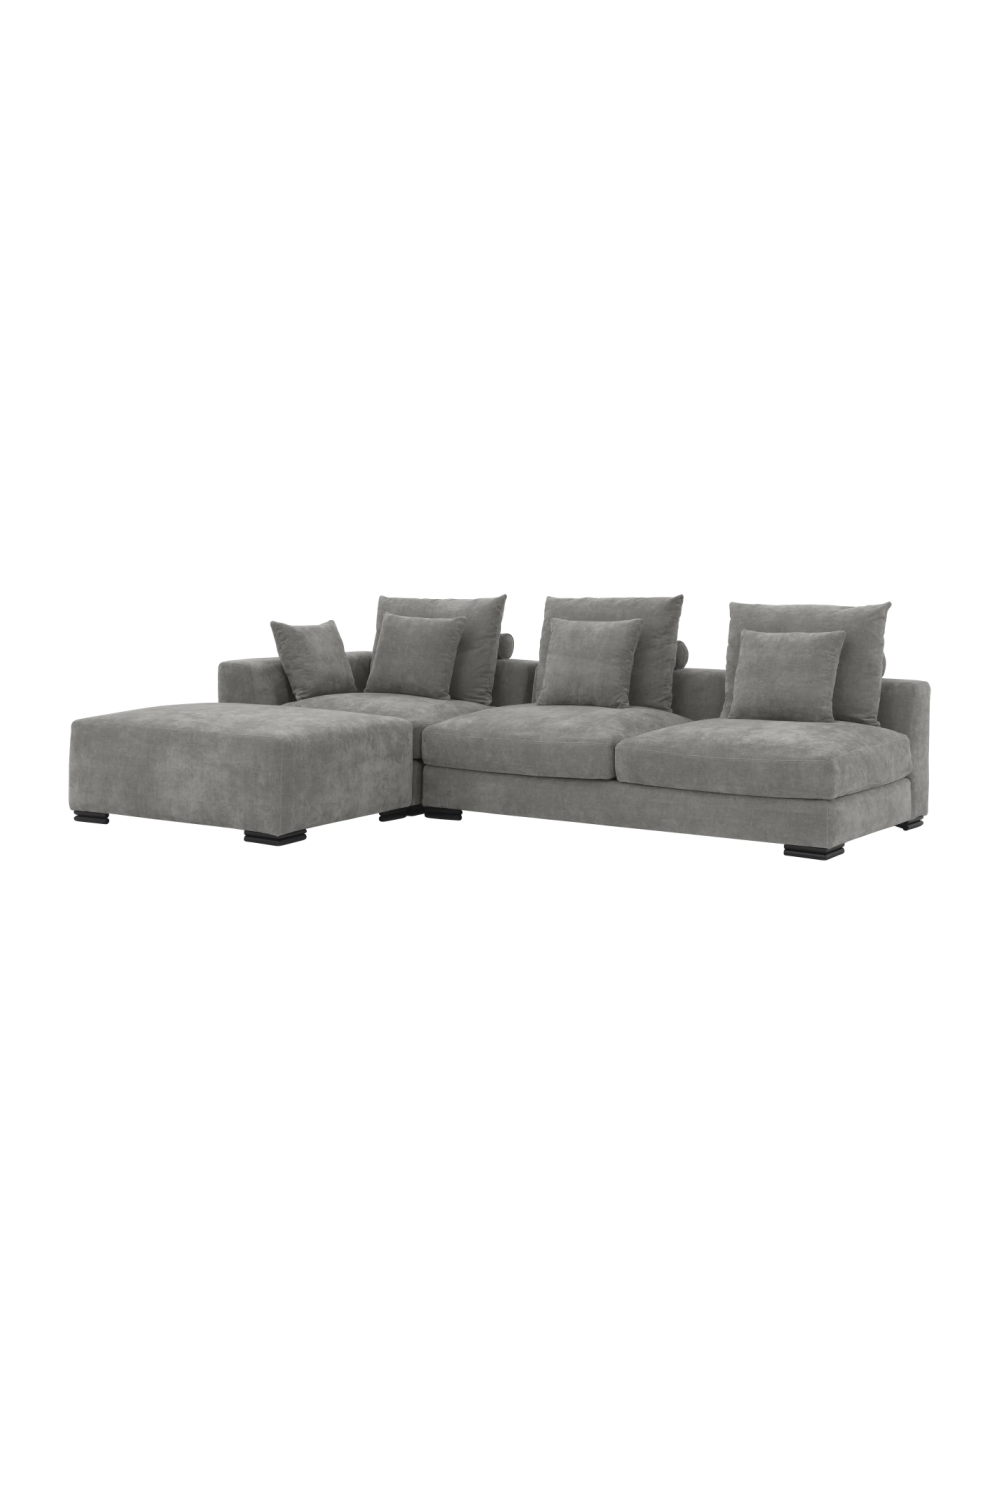 Gray Contemporary Sofa | Eichholtz Clifford | Oroa.com